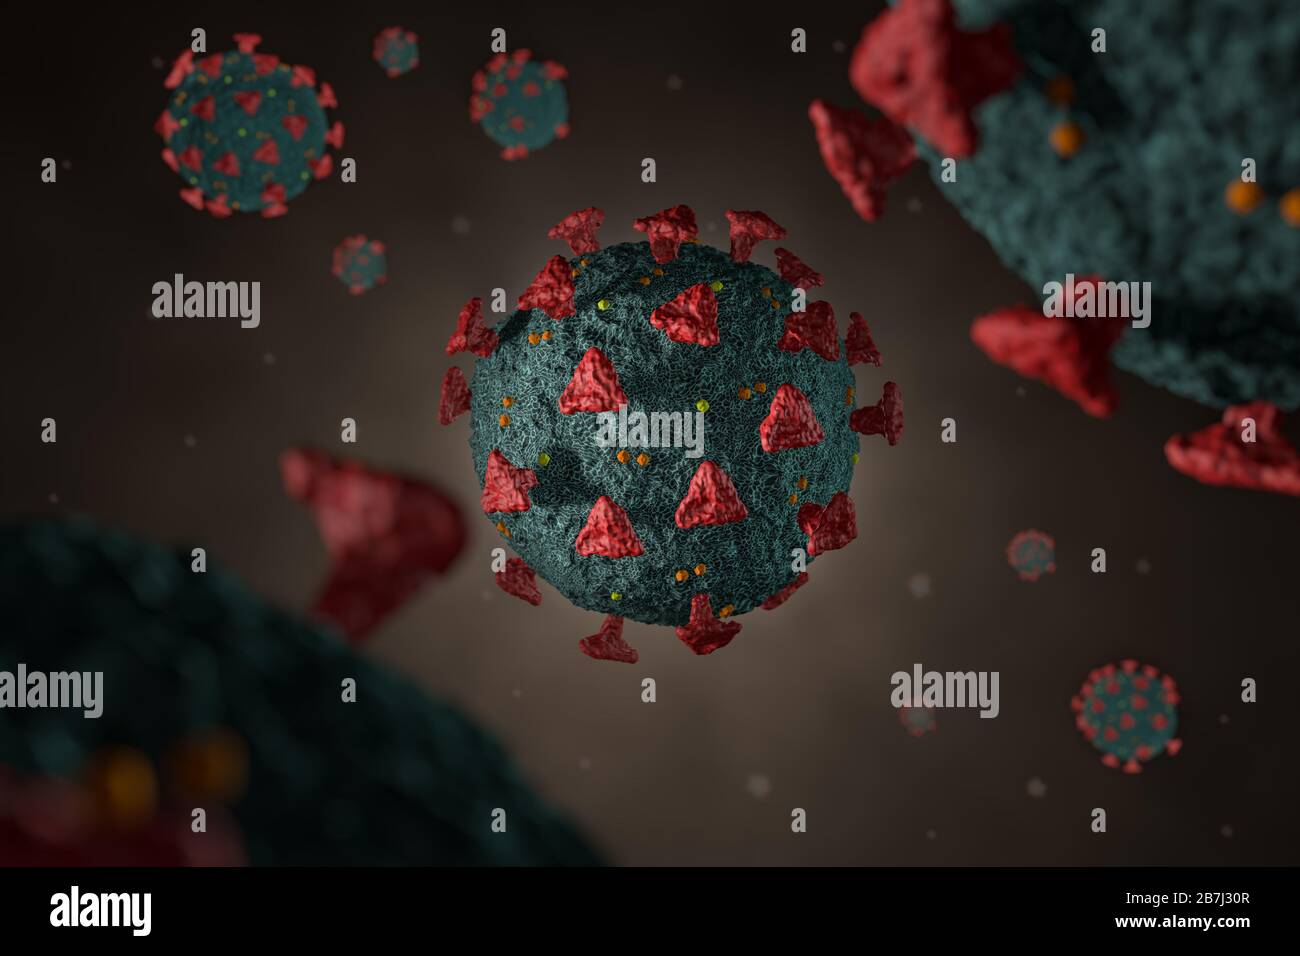 Illustration médicale détaillée modélisée par ordinateur du coronavirus Novel 2019-nCoV covid-19. Concept de protection contre la pandémie de virus. Science-fiction de microbiologie Banque D'Images